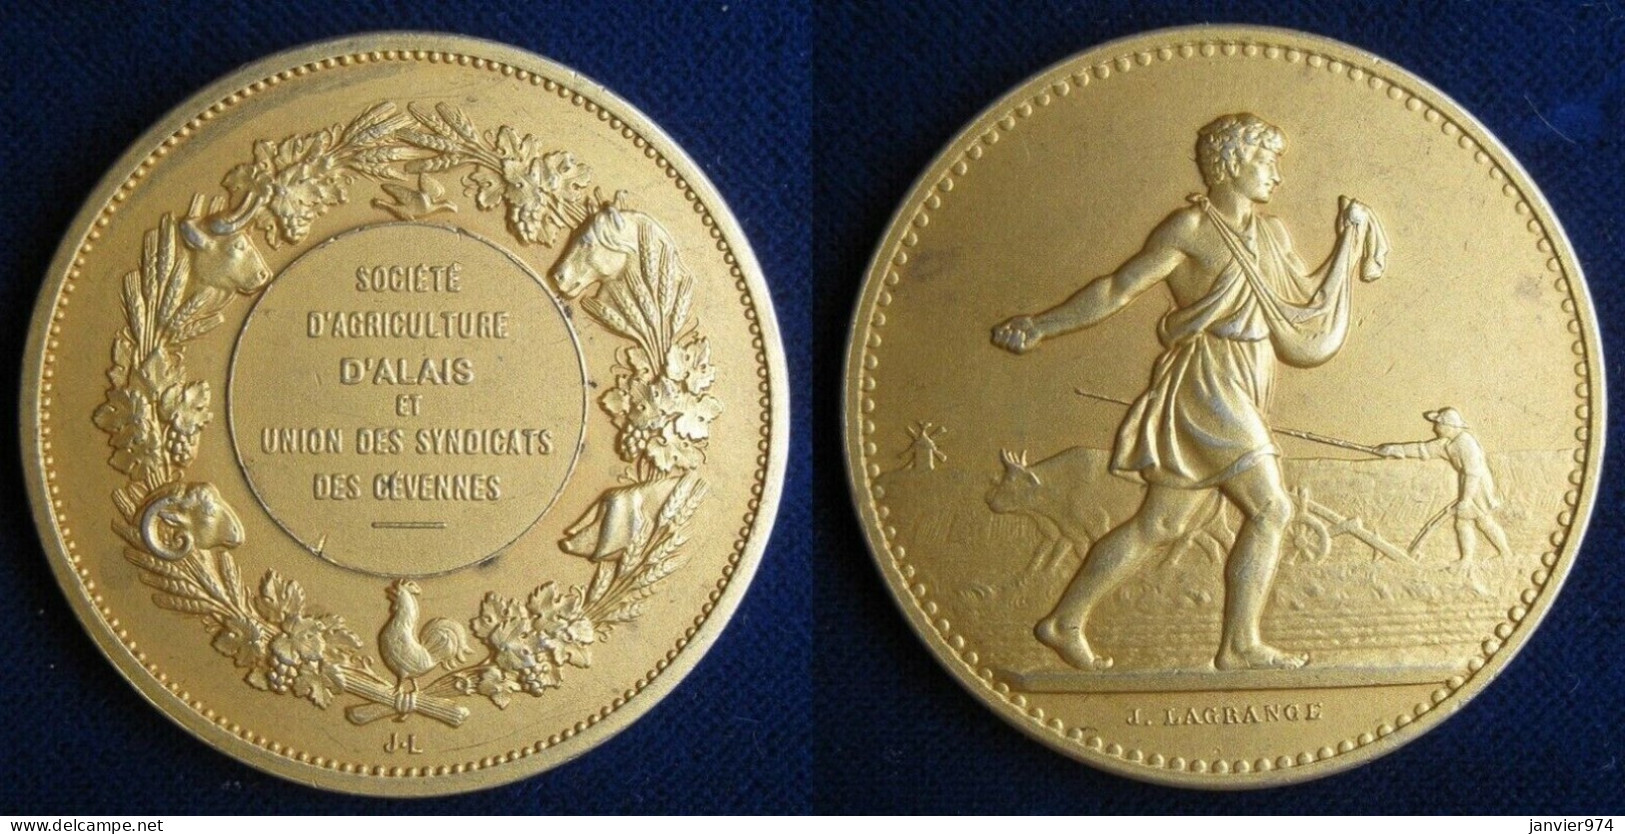 Médaille En Argent Vermeil. Société Agriculture Alais - Gard . Union Syndicats Des Cévennes - Professionnels / De Société